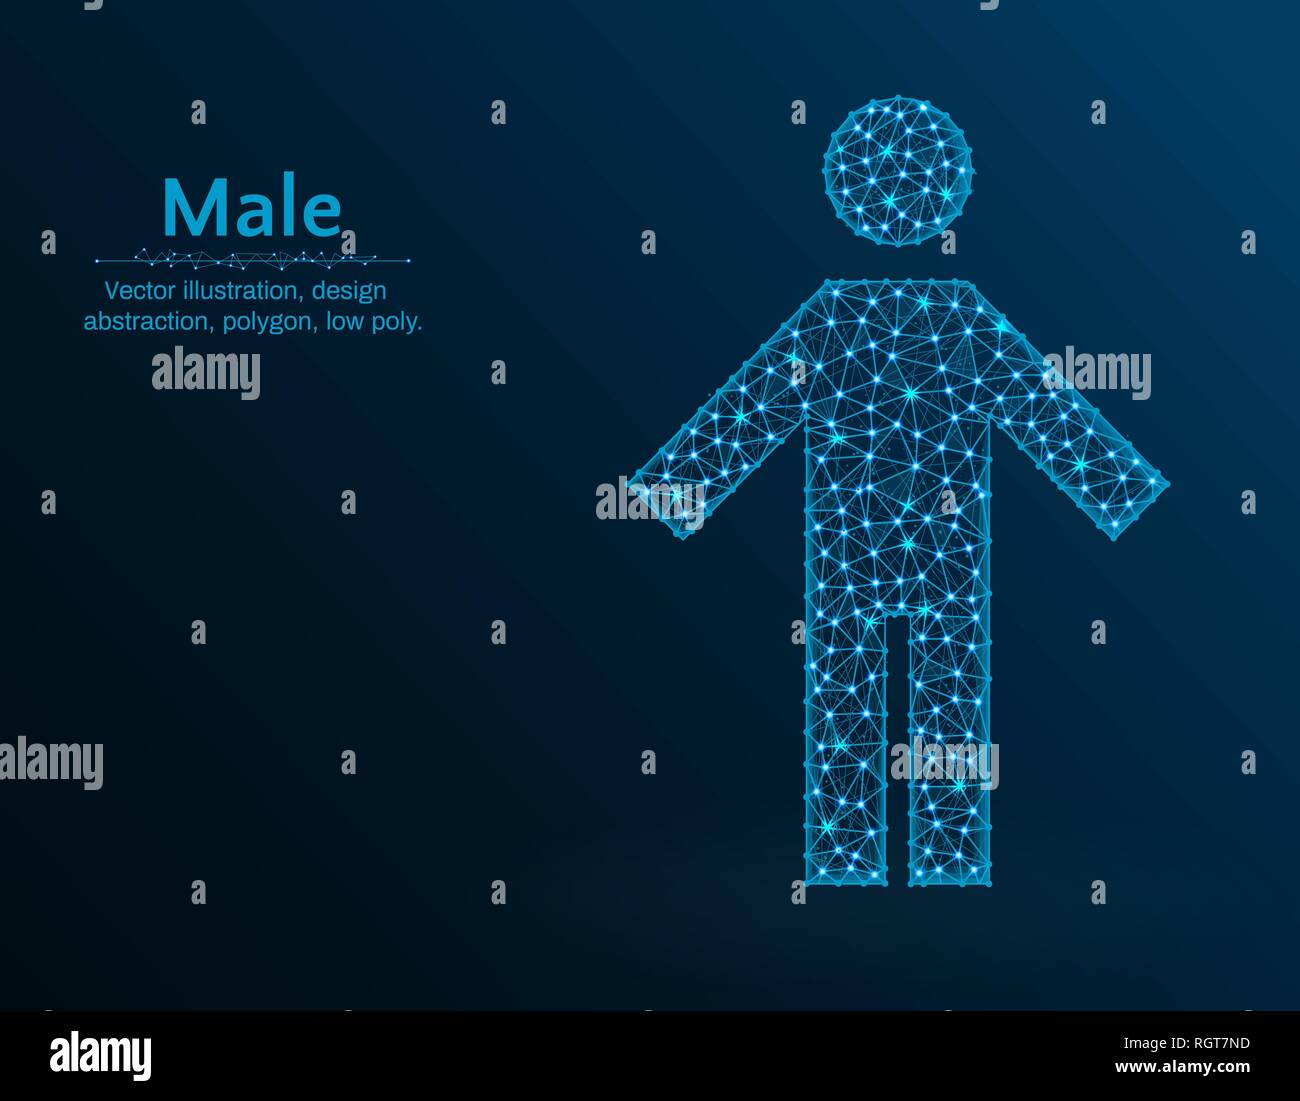 Männliche Low Poly Vector Illustration, mann Symbol auf blauem Hintergrund, abstrakt Design Illustration Stock Vektor